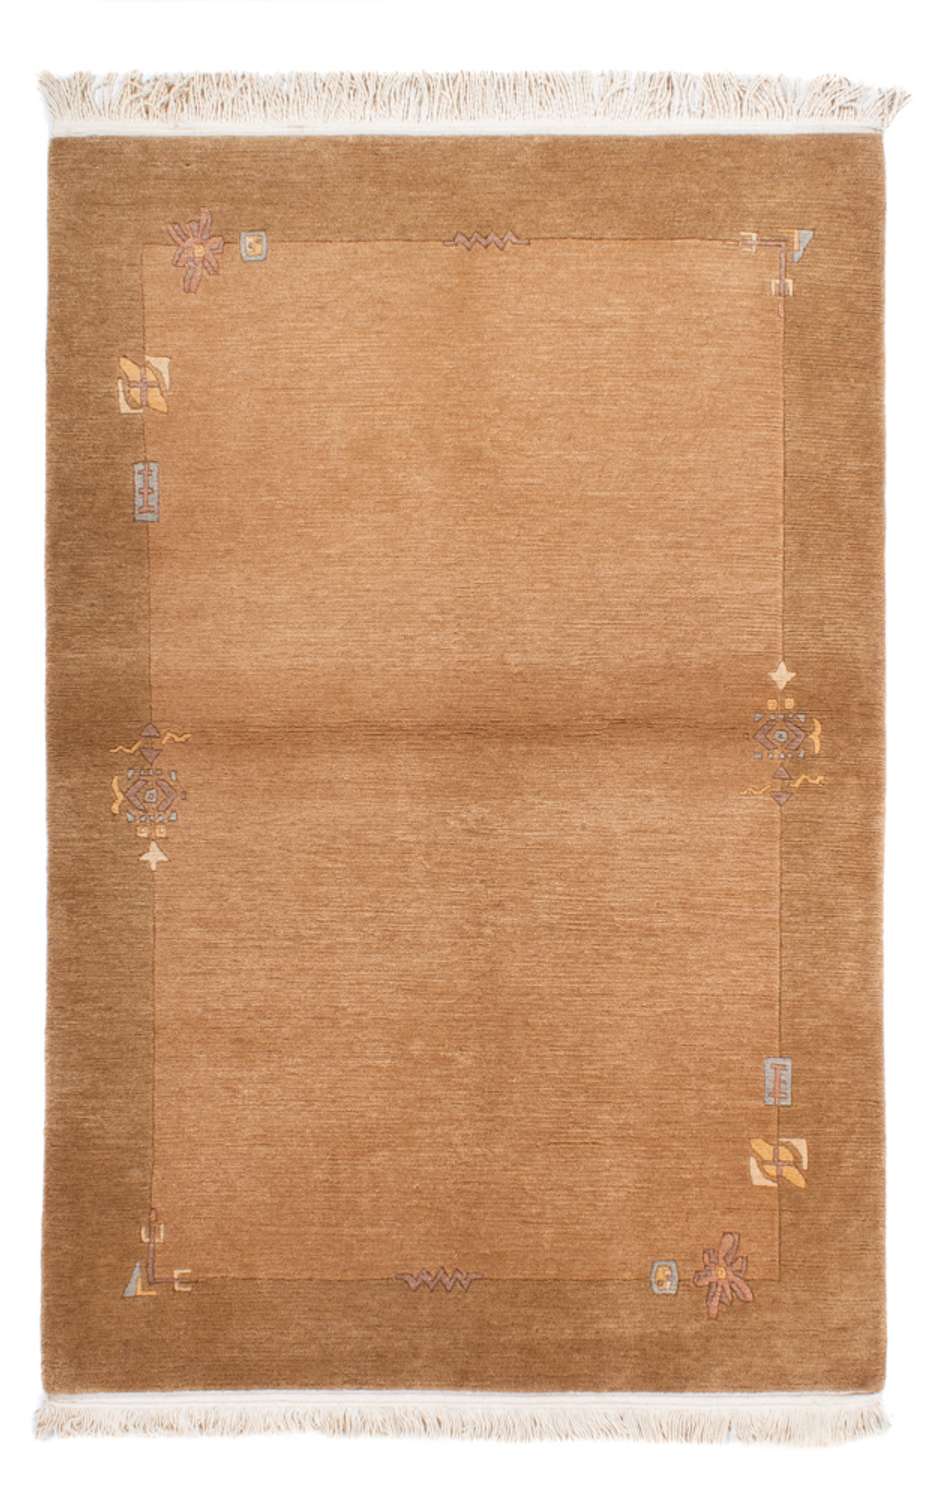 Nepal Rug - 178 x 121 cm - brown